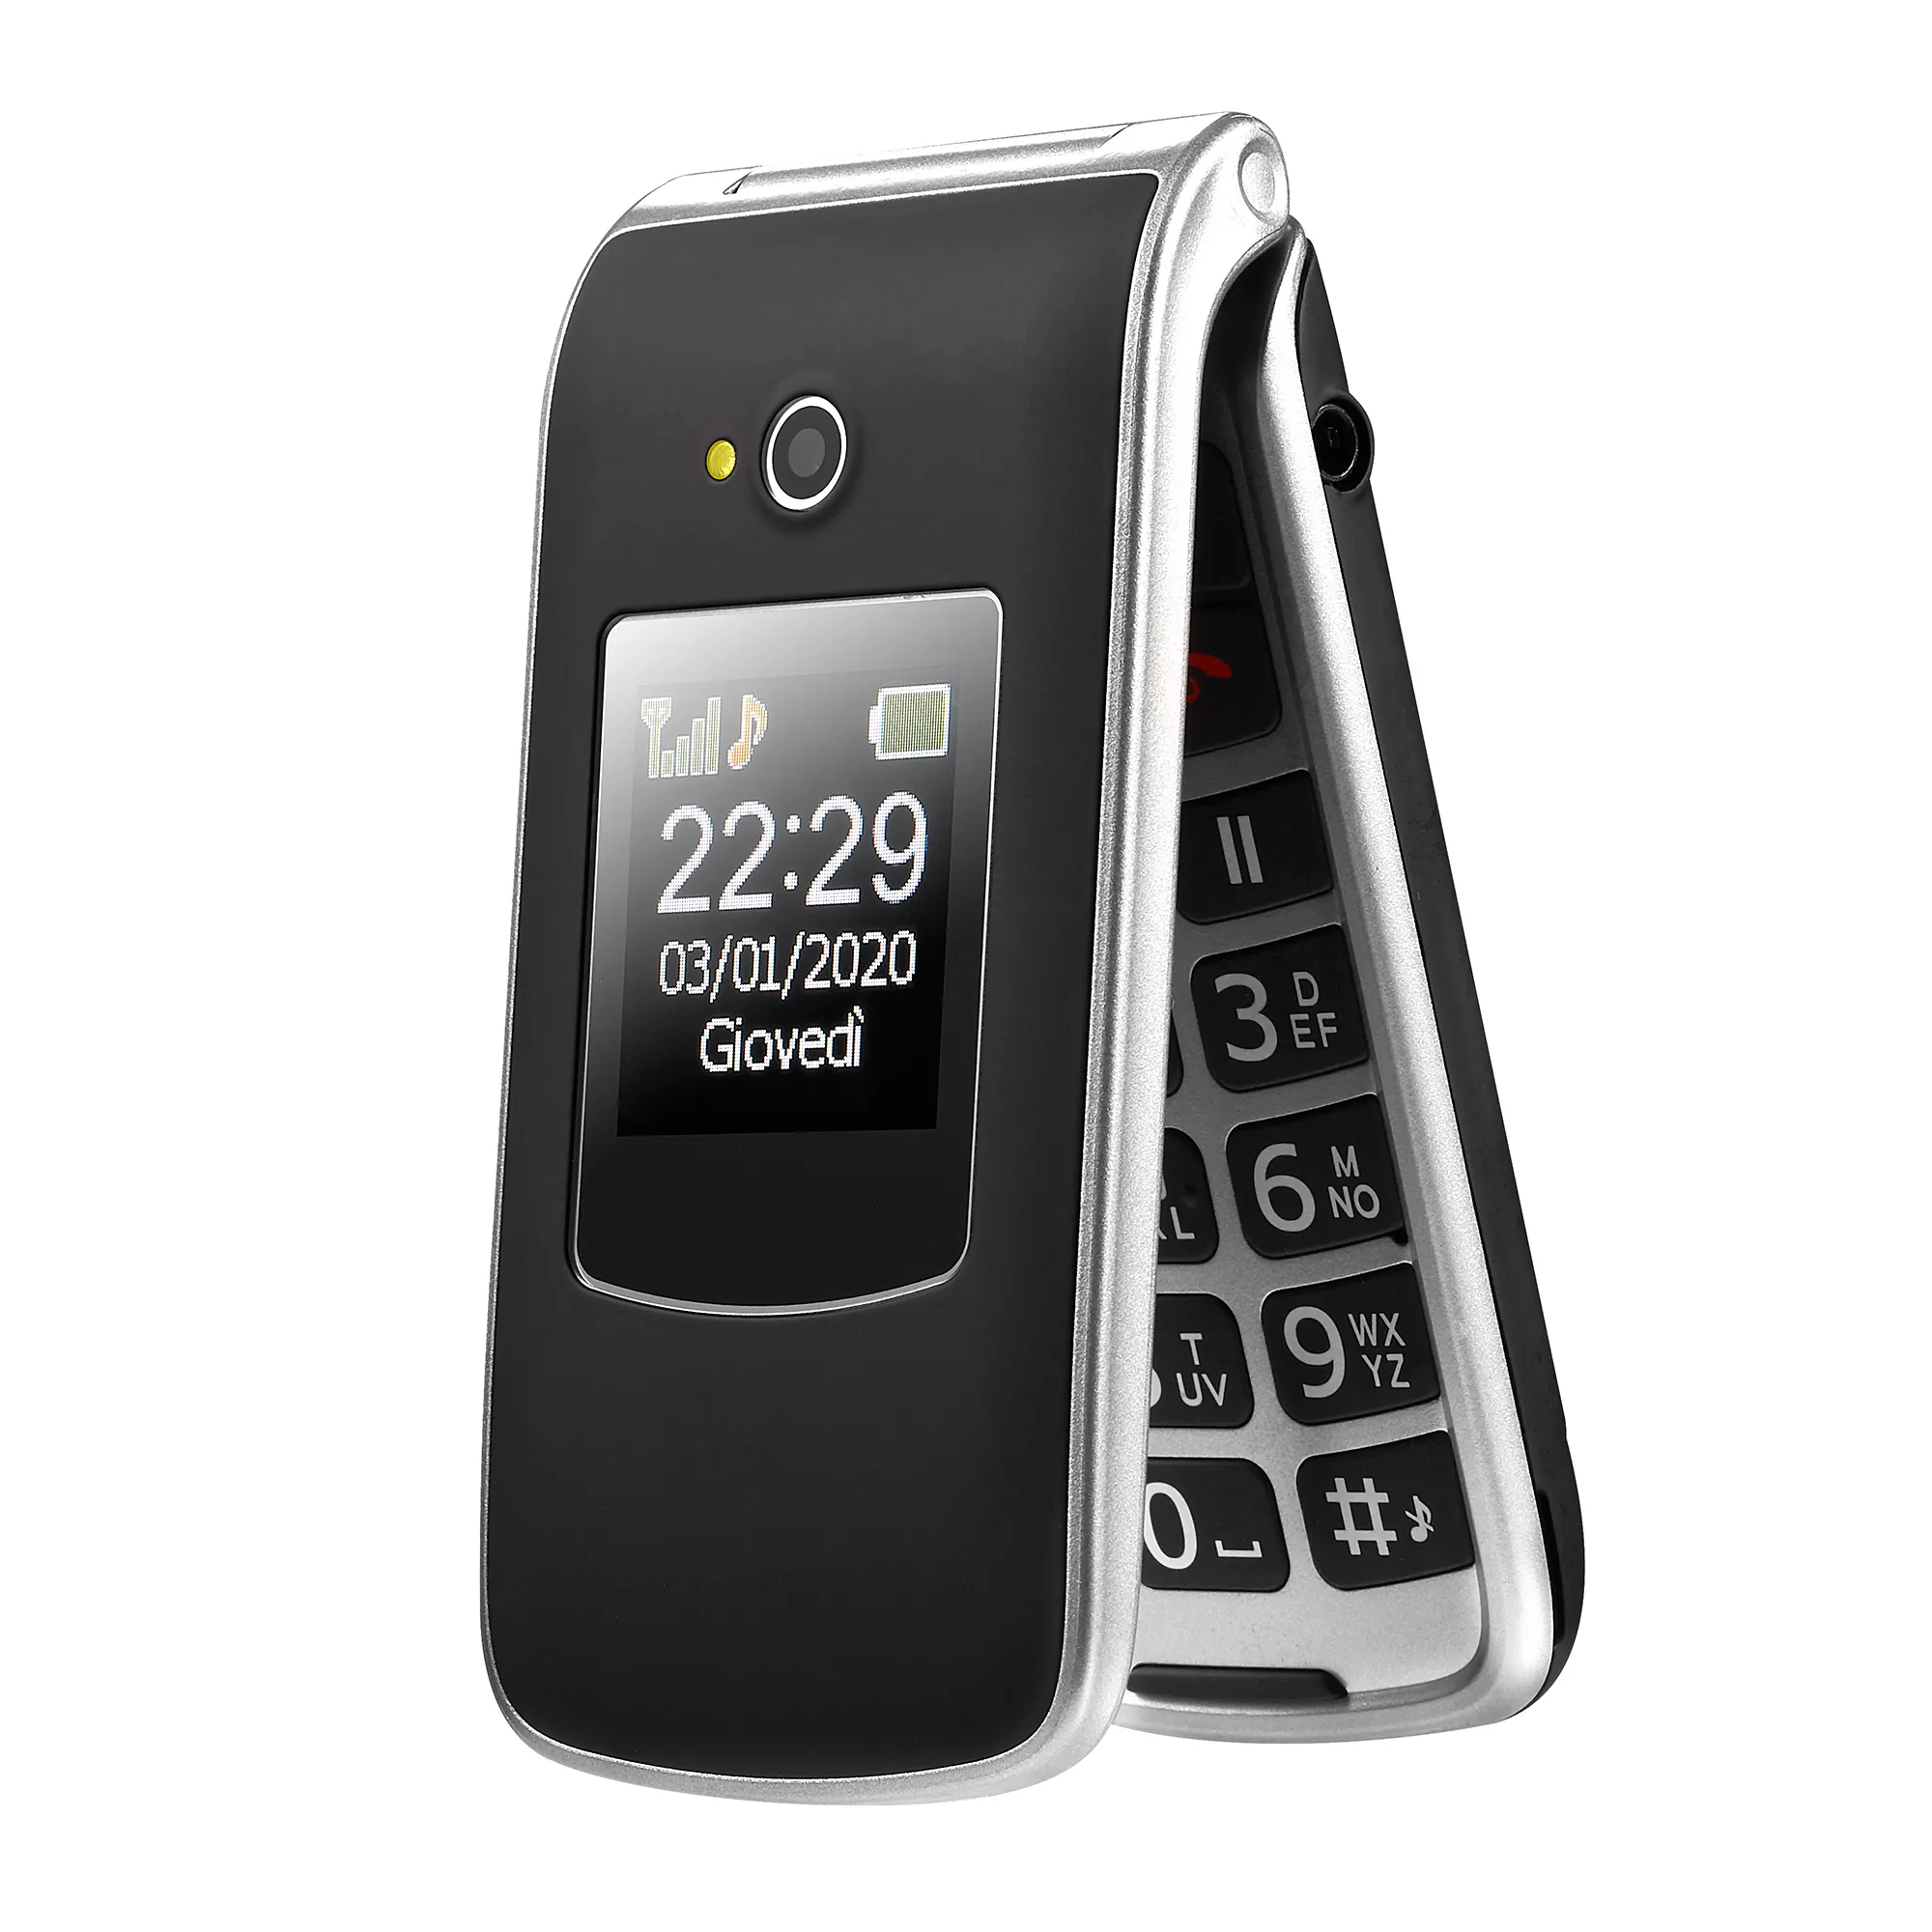 Unlocked Handy neues faltbares Mobiltelefon mit SOS-Taste und Unterstützung von mehreren Nationen Sprache